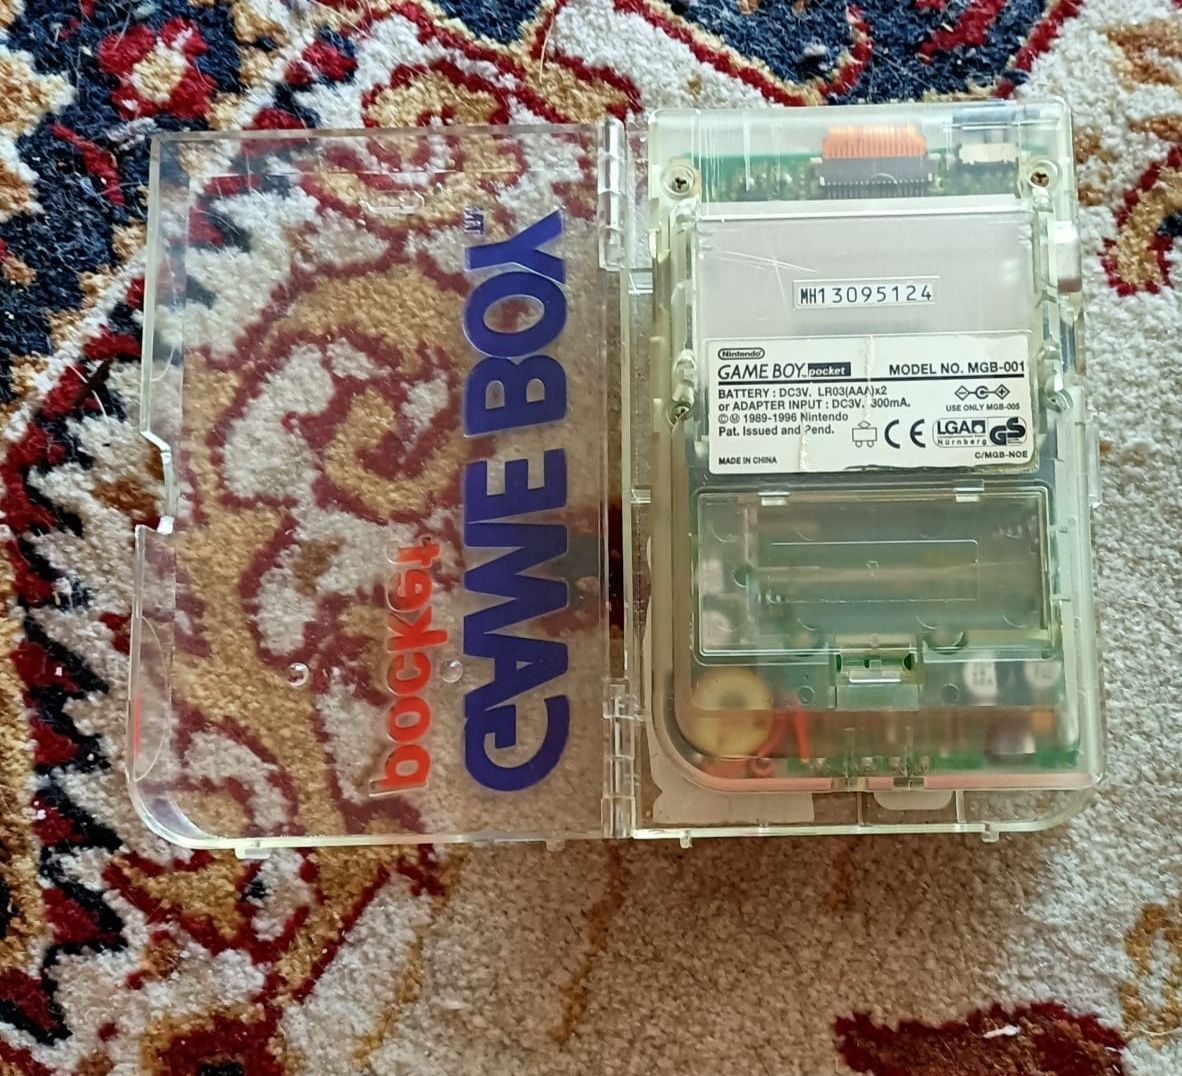 Consola GAME BOY Pocket com caixa